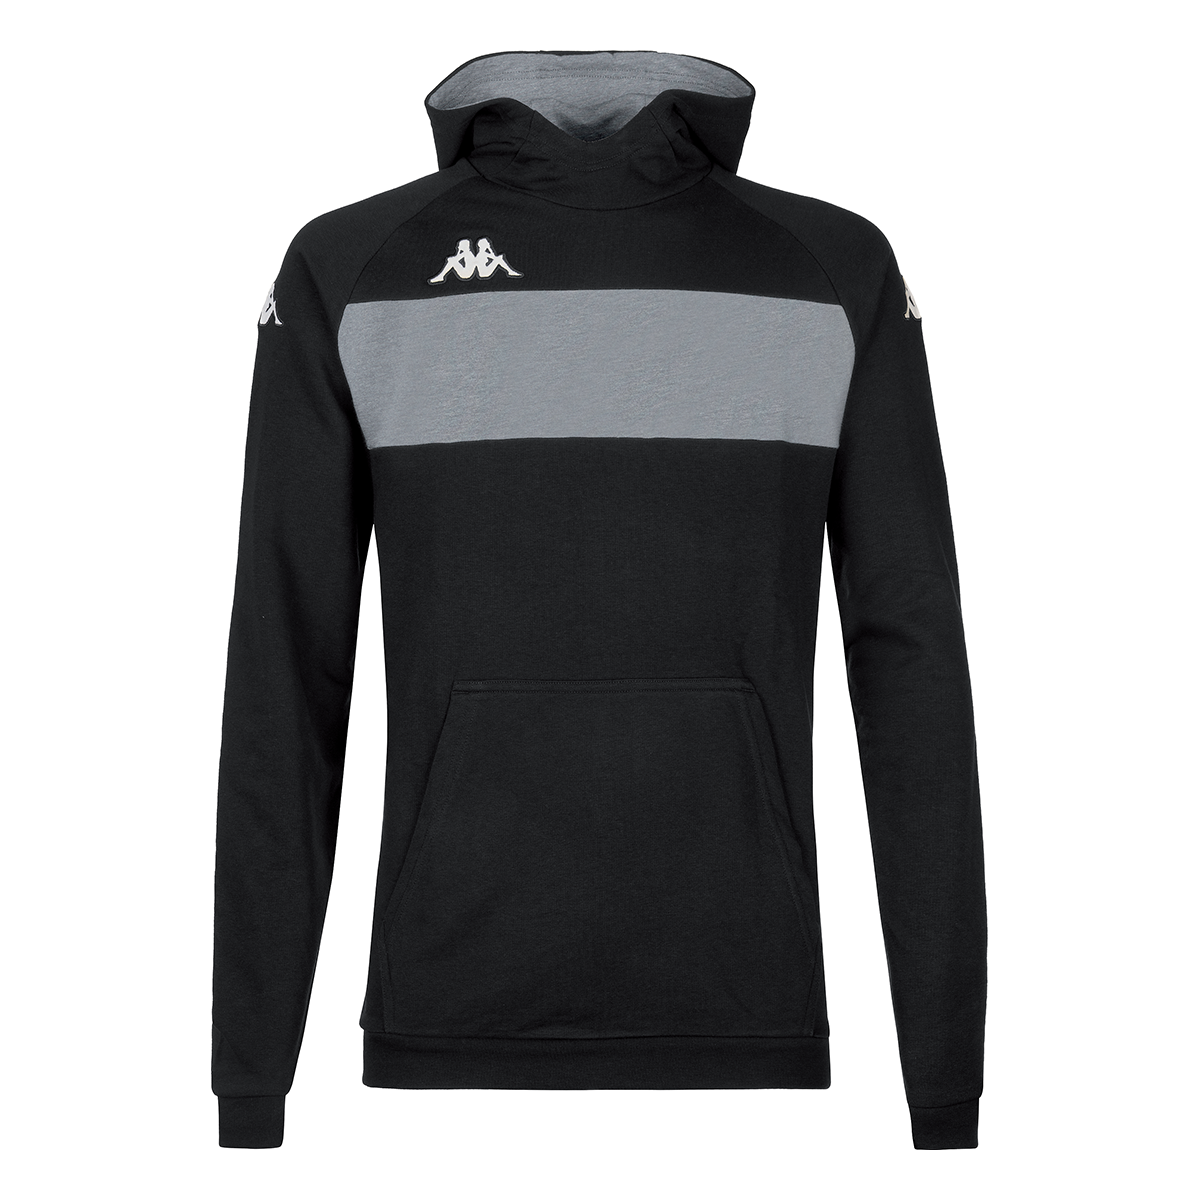 Sweatshirt Kappa Daccio - Roupa ideal para o seu desporto favorito. | Sport Zone MKP